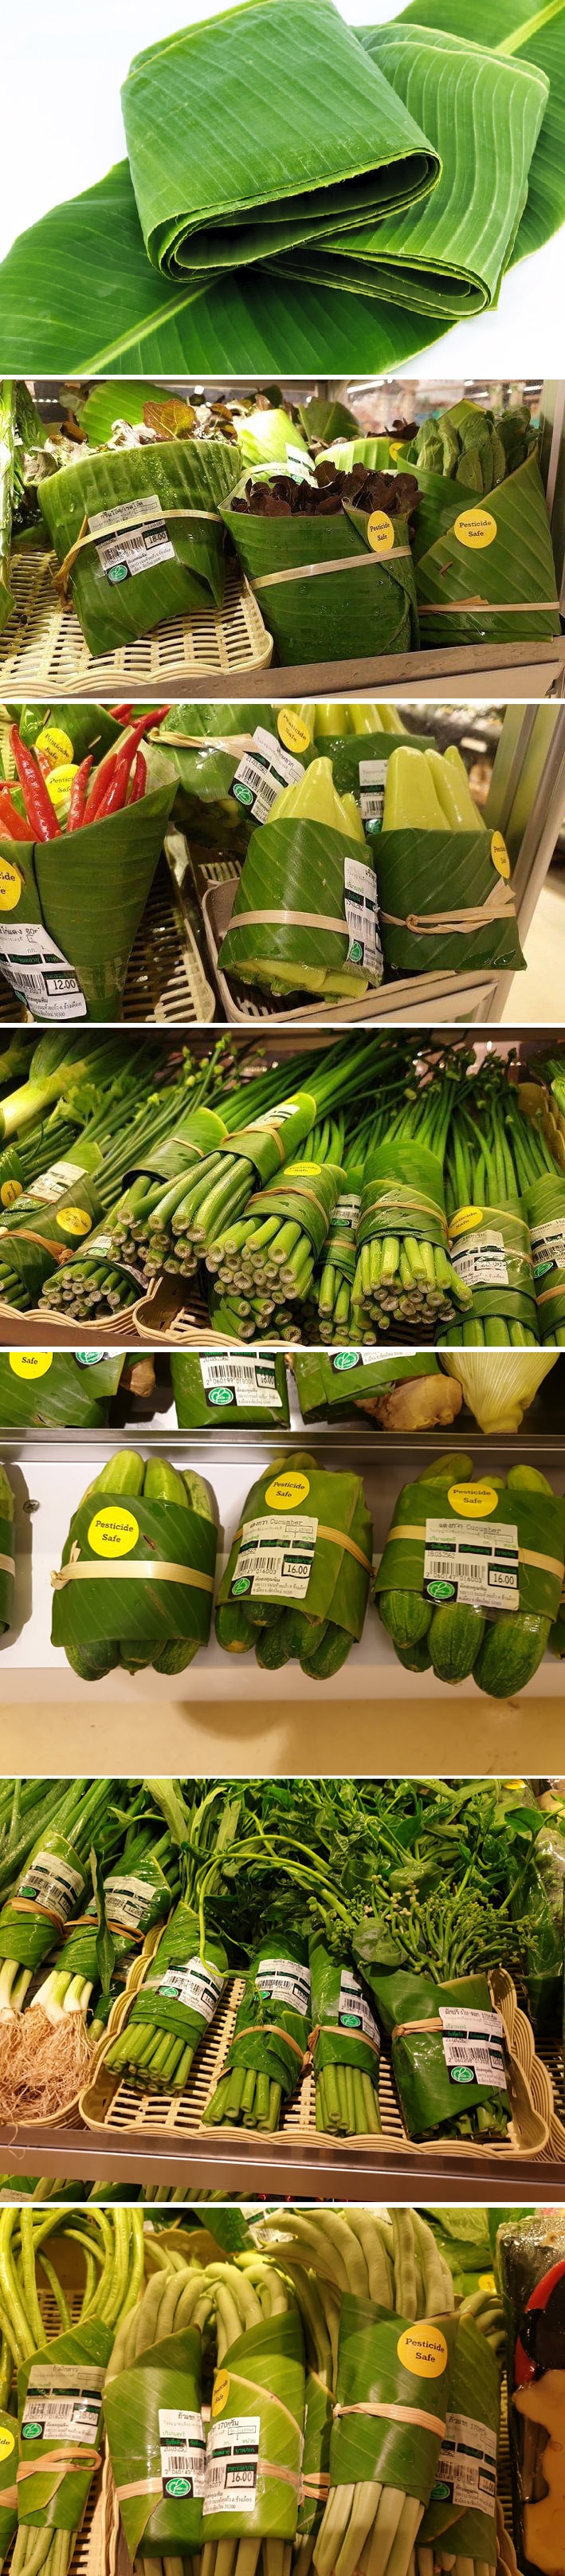 Supermercado tailandês utiliza folhas de bananeira para substituir embalagens plásticas